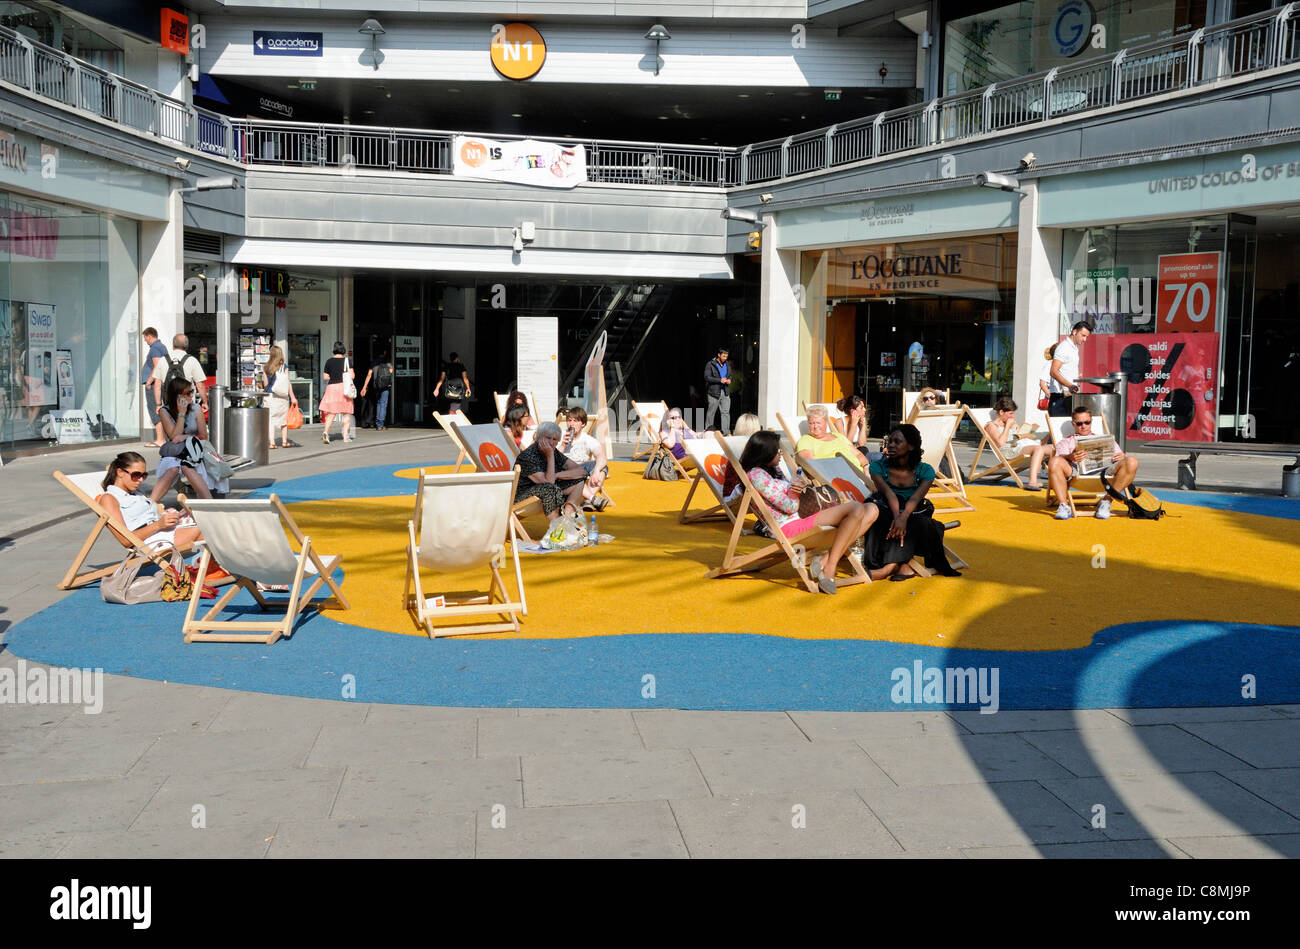 Las personas relajarse en tumbonas en la imitación arena en el centro de N1, Angel Islington, Londres, Inglaterra Foto de stock